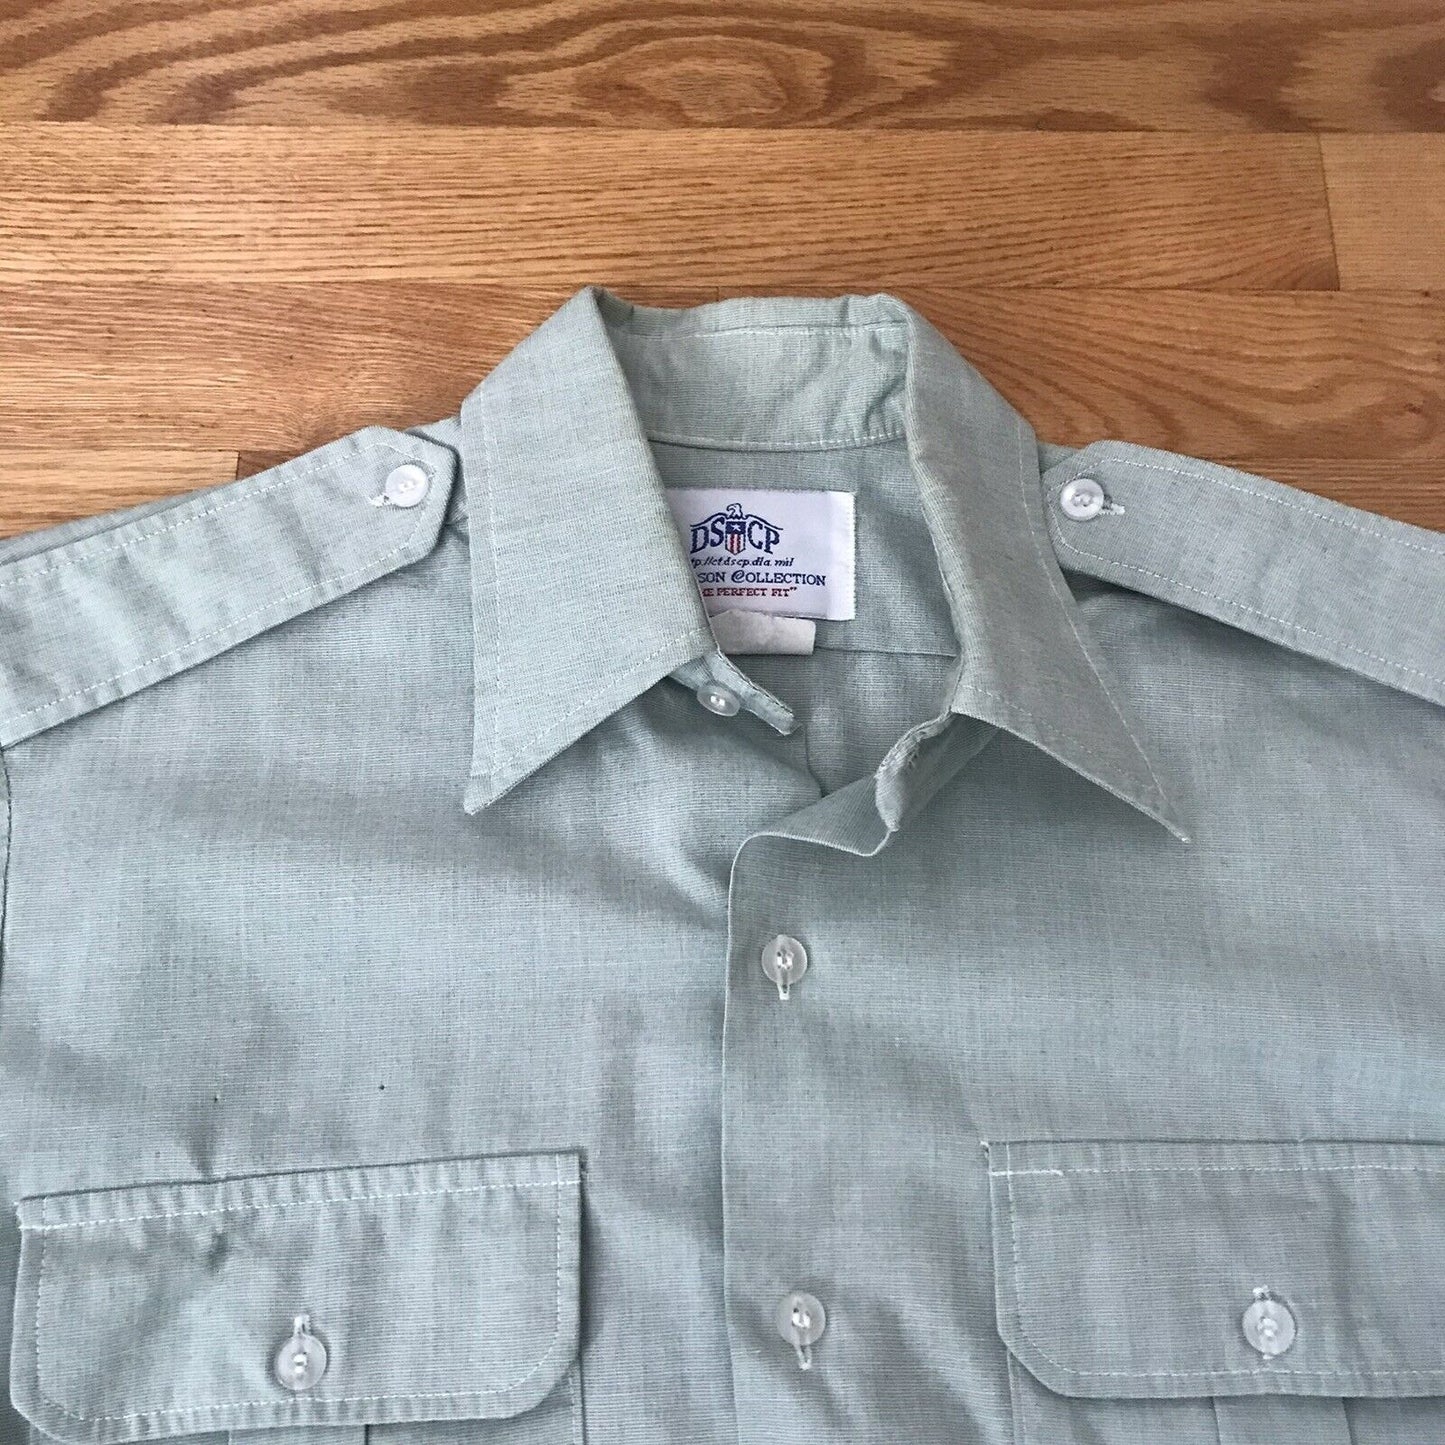 Army Green Dress Shirt Long Sleeve Class A Size 34/35 x 15 DSCP AG-415